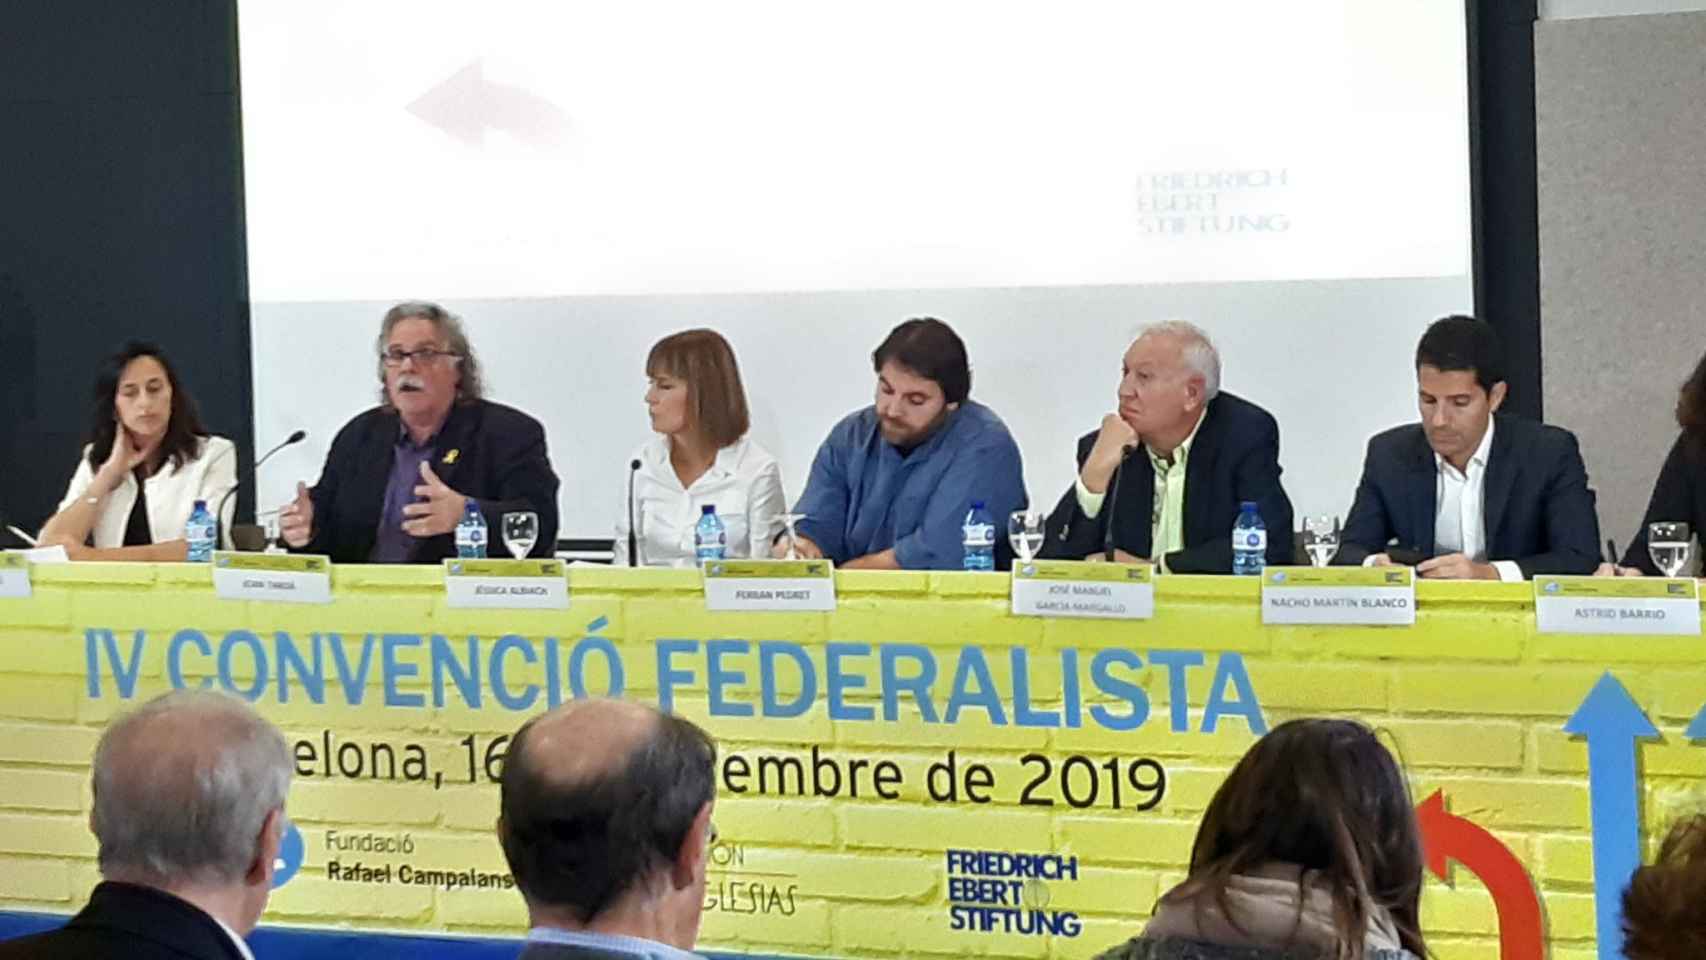 El exdiputado de ERC en el Congreso Joan Tardà, entre Niubó (Fundació Campalans) y Albicach (Comuns). Junto a ellos, Pedret (PSC), Margallo (PP) y Martín Blanco (Cs).